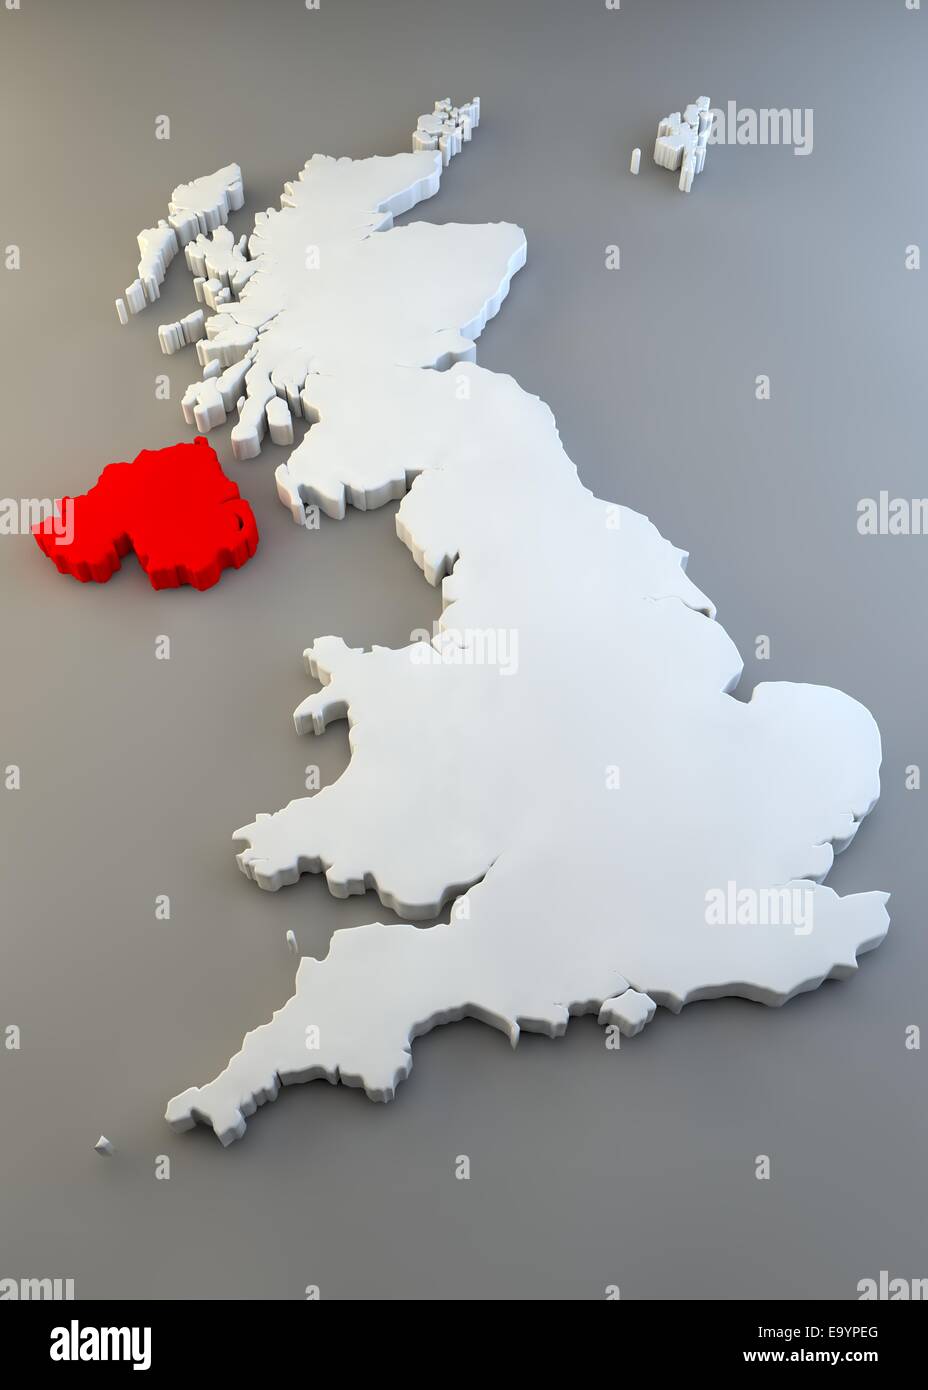 Angleterre, Ecosse, Pays de Galles et Irlande du Nord texture map Banque D'Images